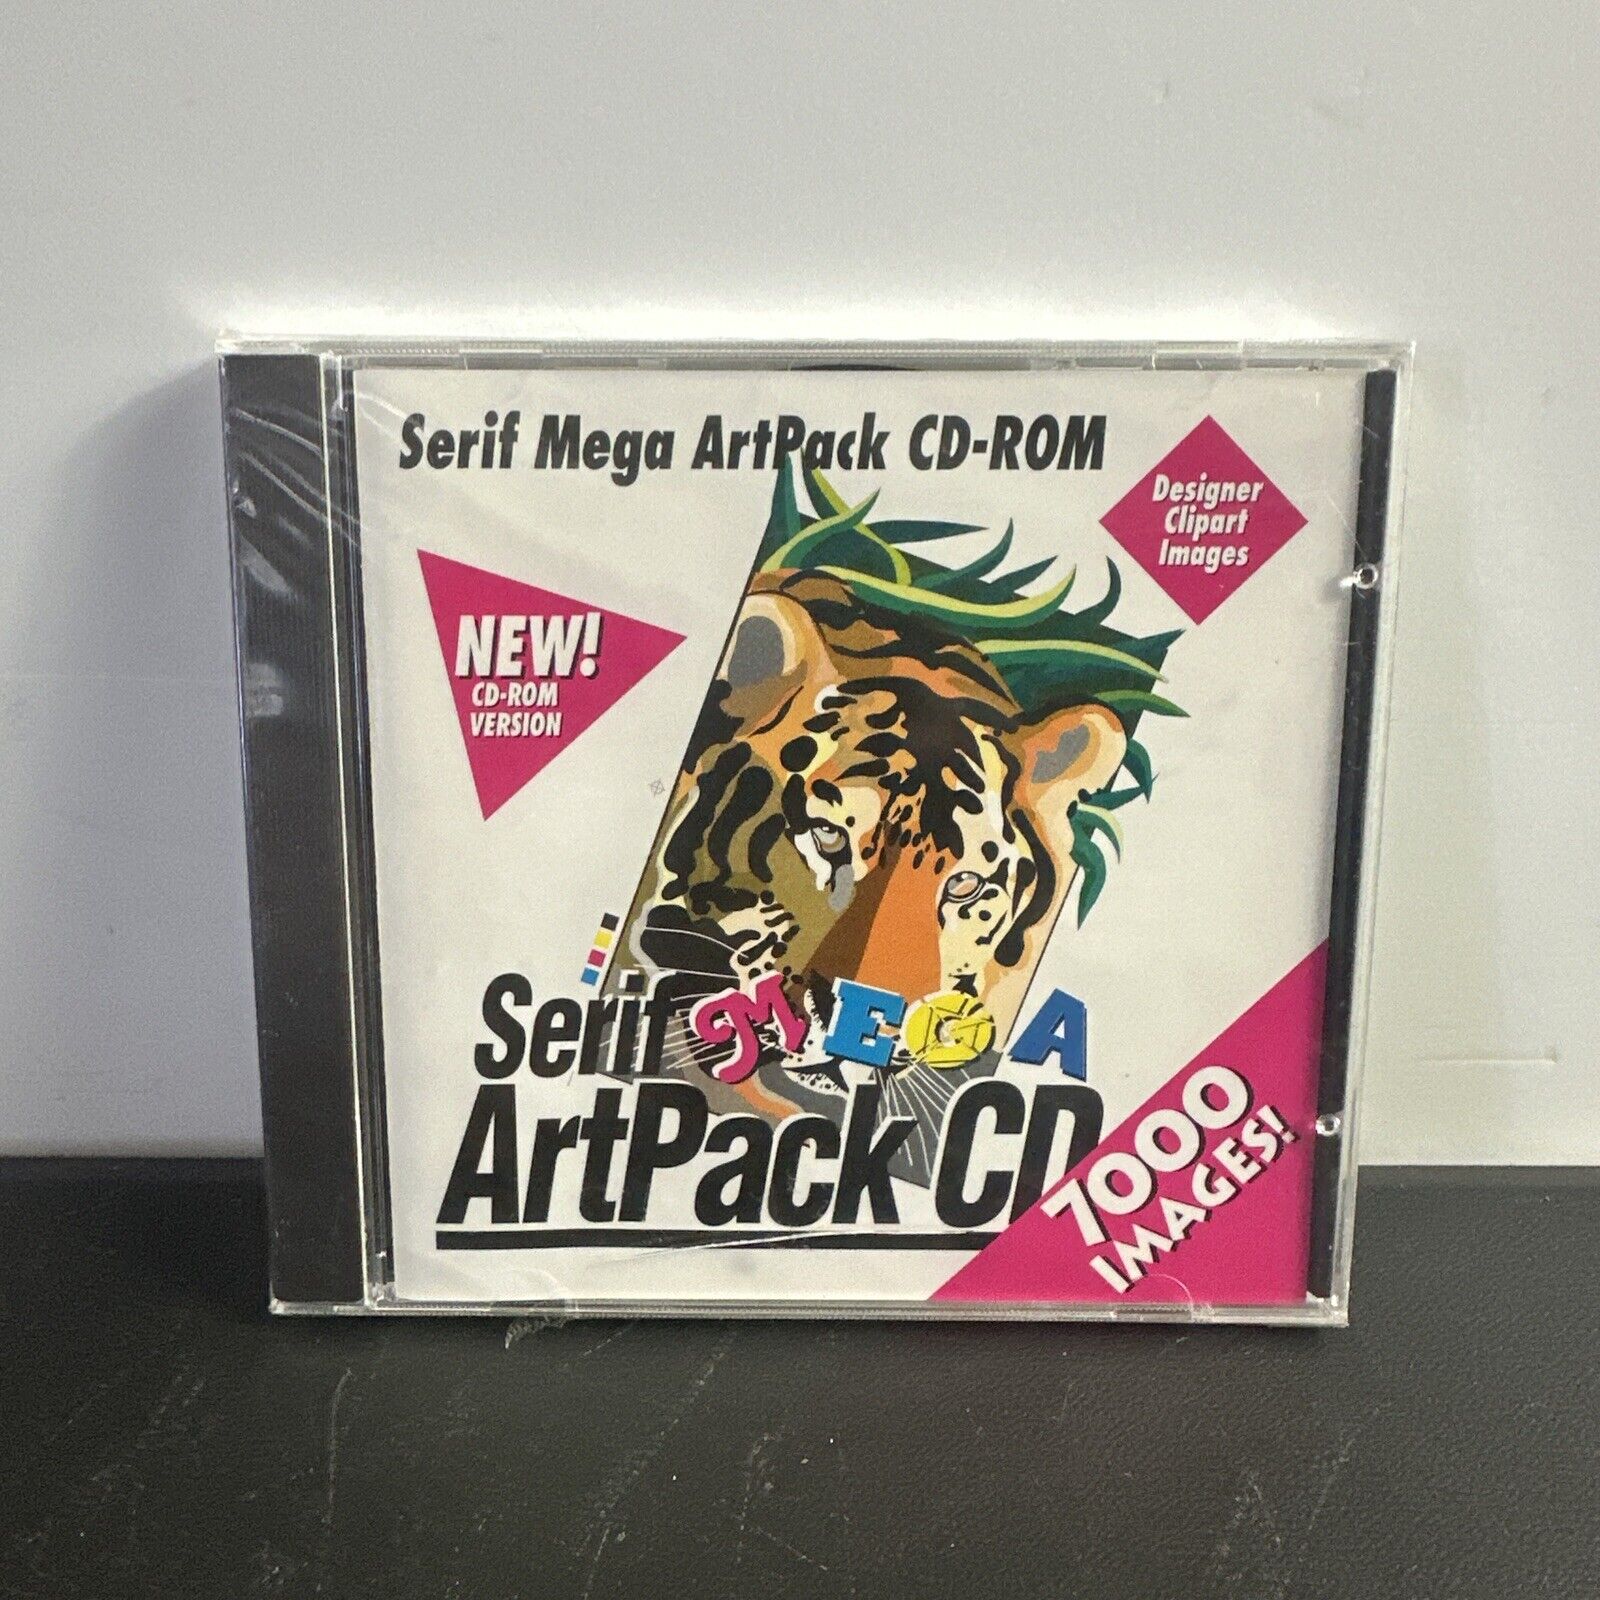 Serif Mega ArtPack CD-Rom - RARE Vintage Vaporwave Clipart 90s 1994 CD ROM Art ,